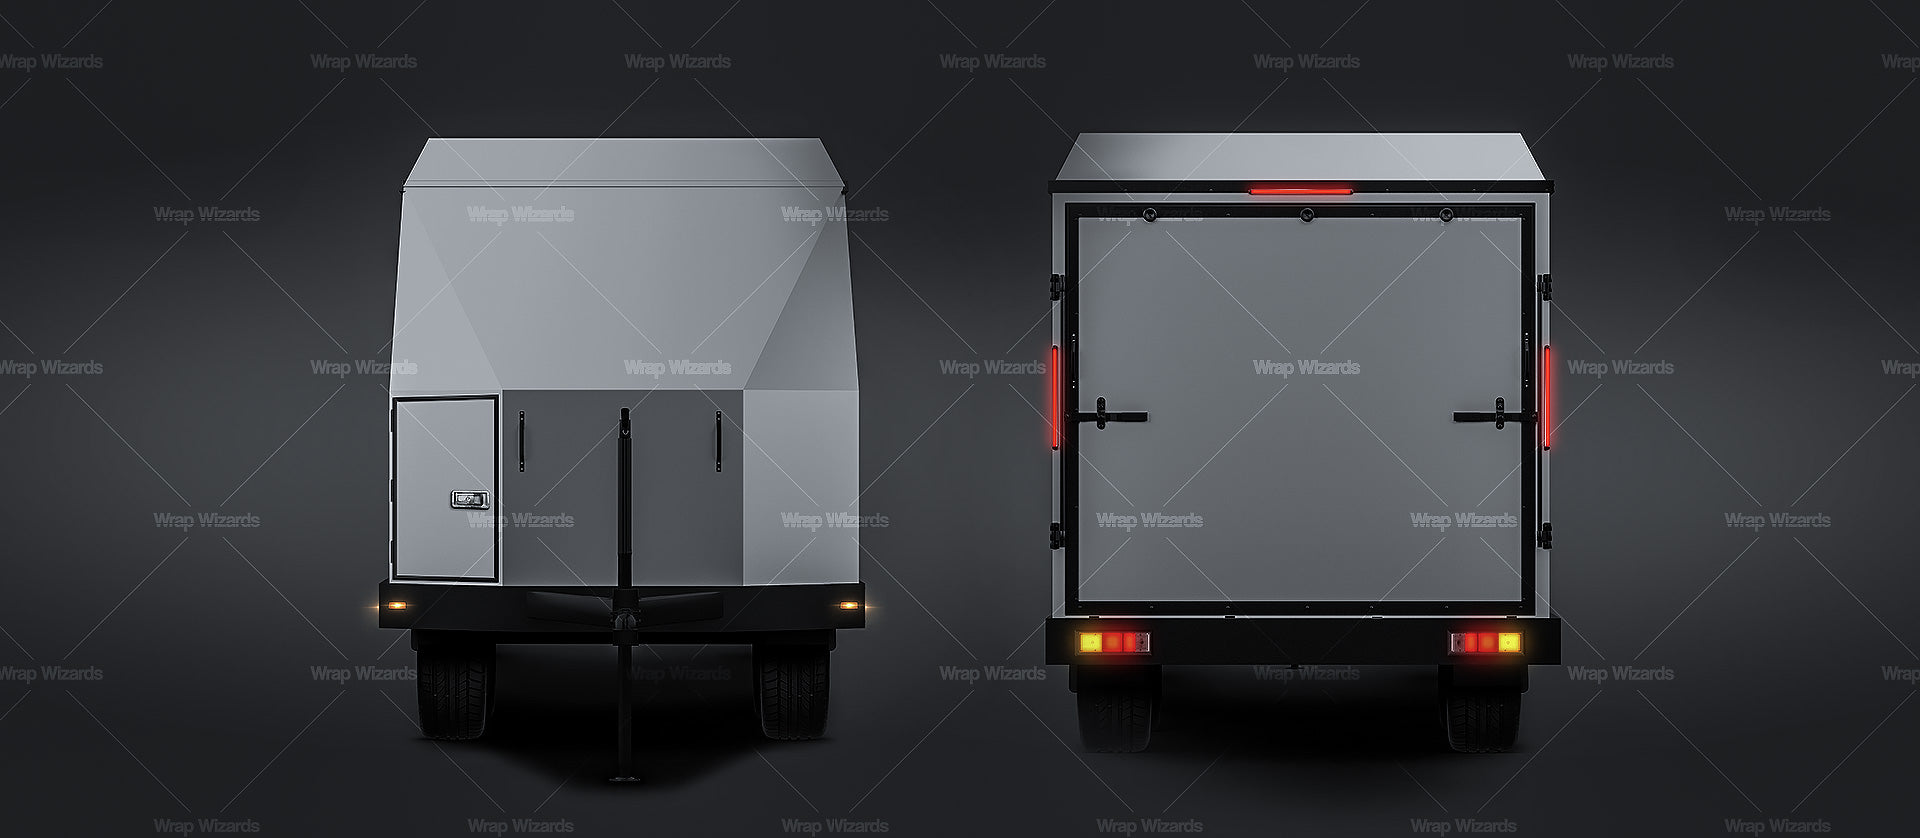 Motorsport trailer | car transporter | enclosed car hauler satin matt finish - all sides Car Mockup Template.psd